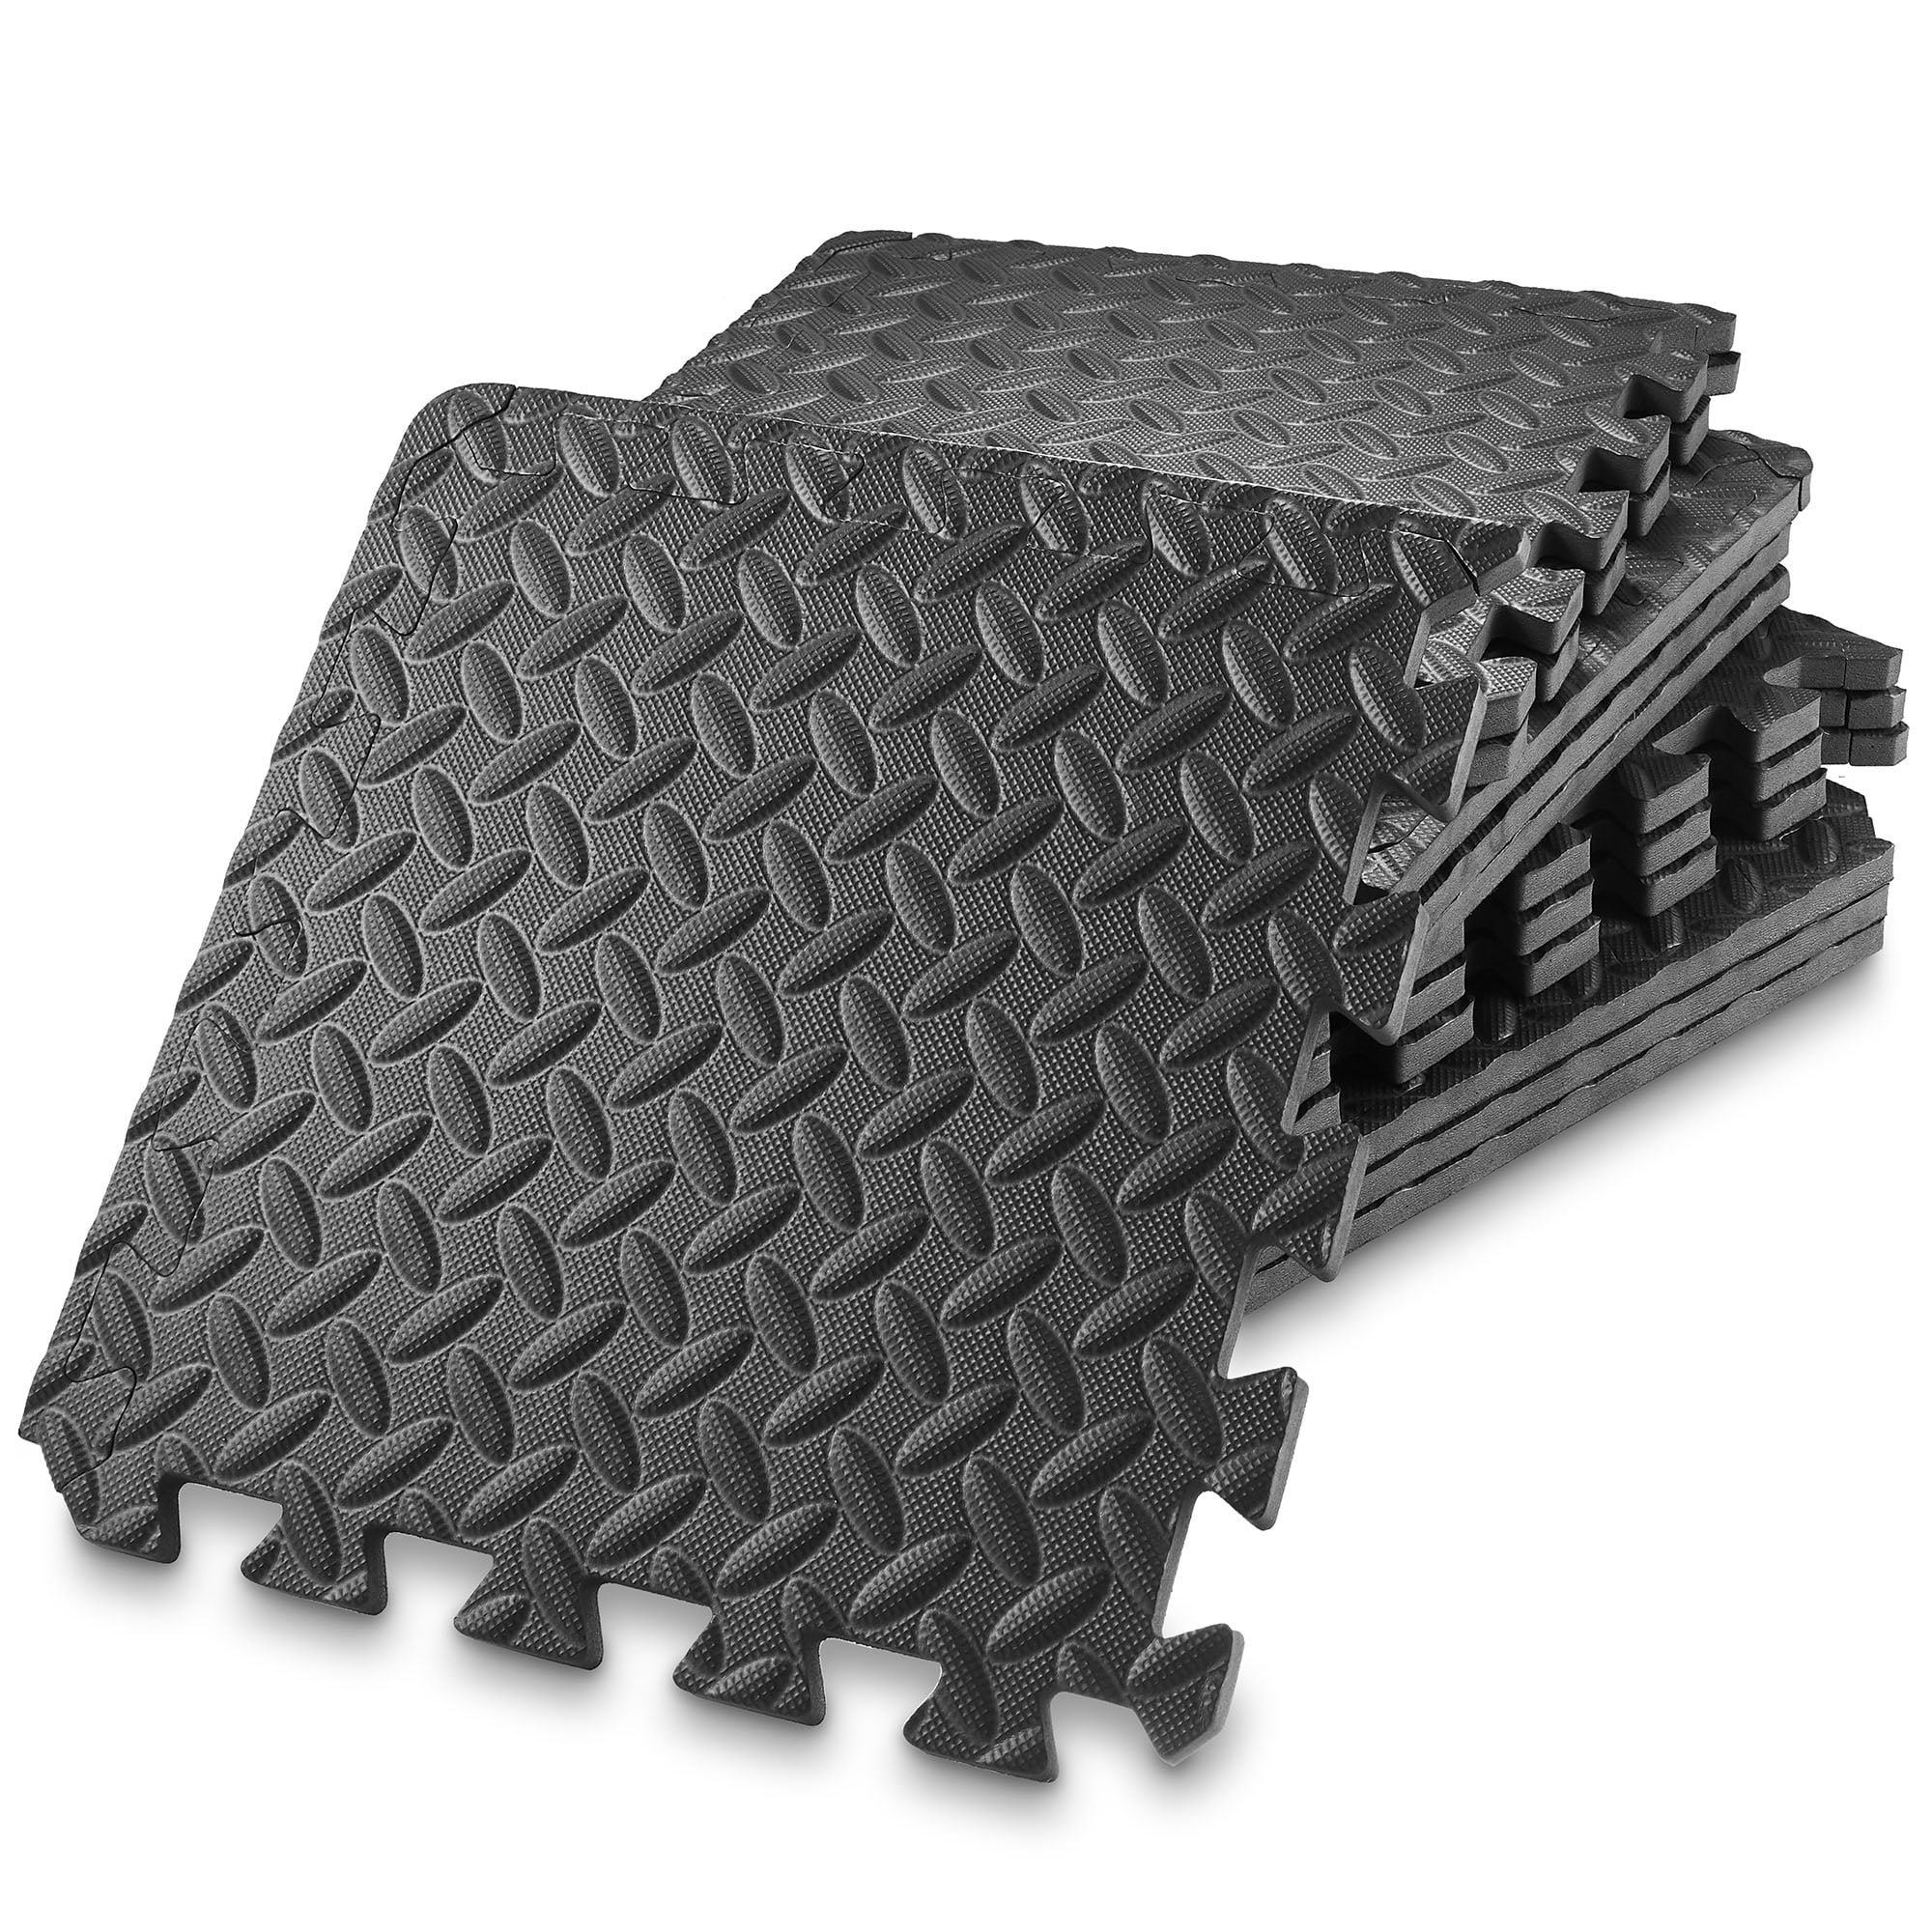 Hmount Deeroll 12pcs Interlocking Foam Floor Mat Suitable for Gym Outdoor/Indoor Protective Flooring Matting, Black, Size: 30